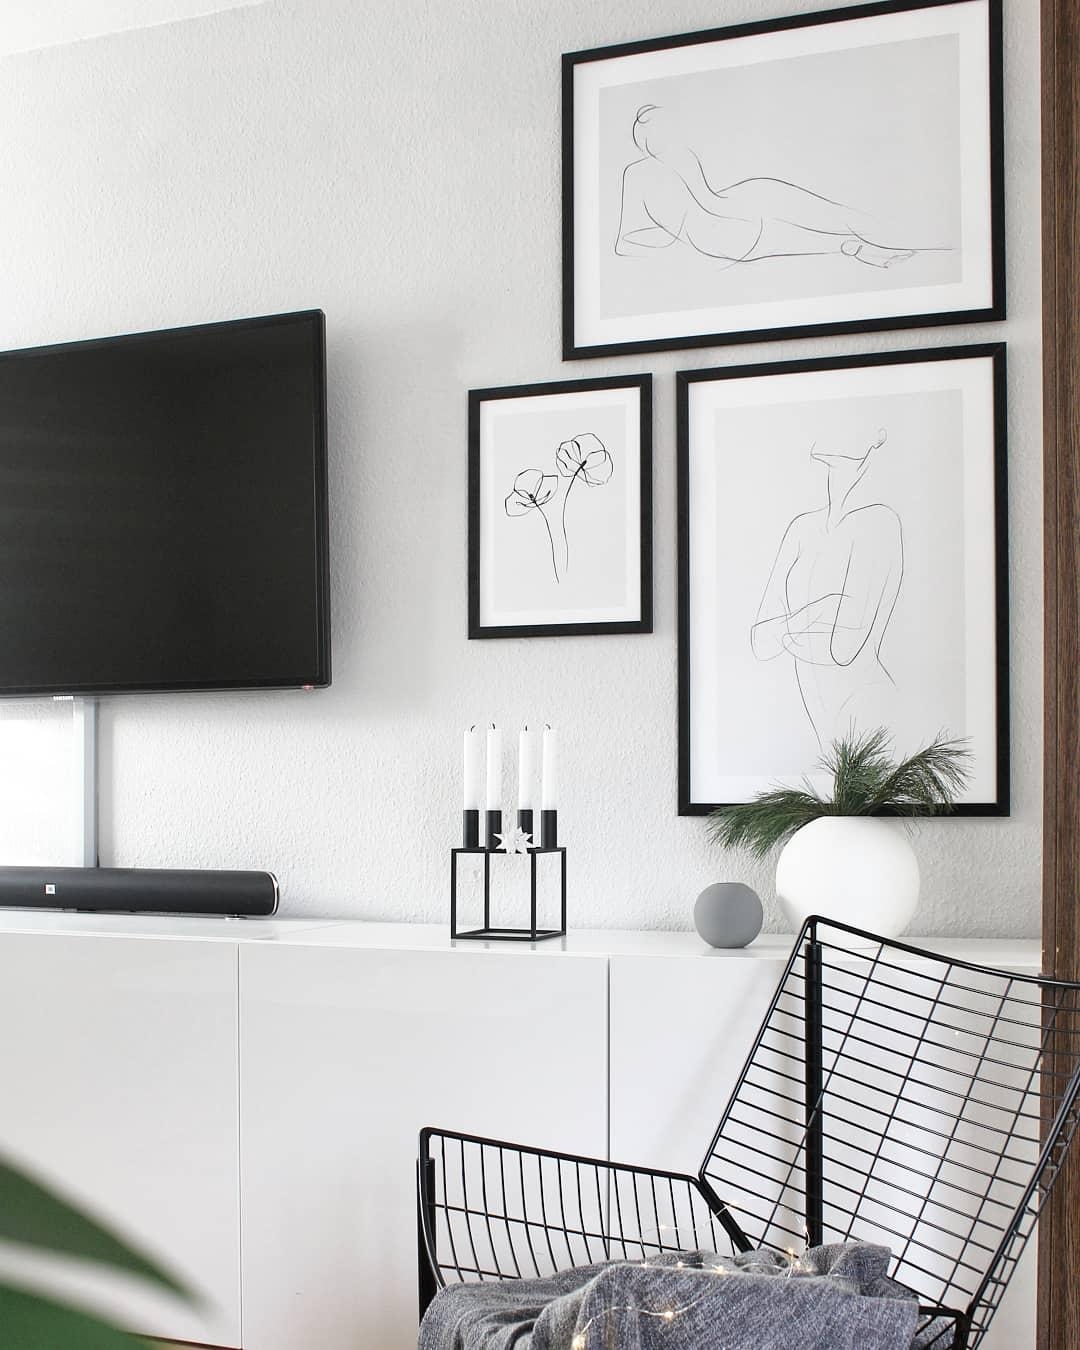 Neue #poster im #wohnzimmer ♡
#minimalism #skandinavischwohnen #monochromehome 